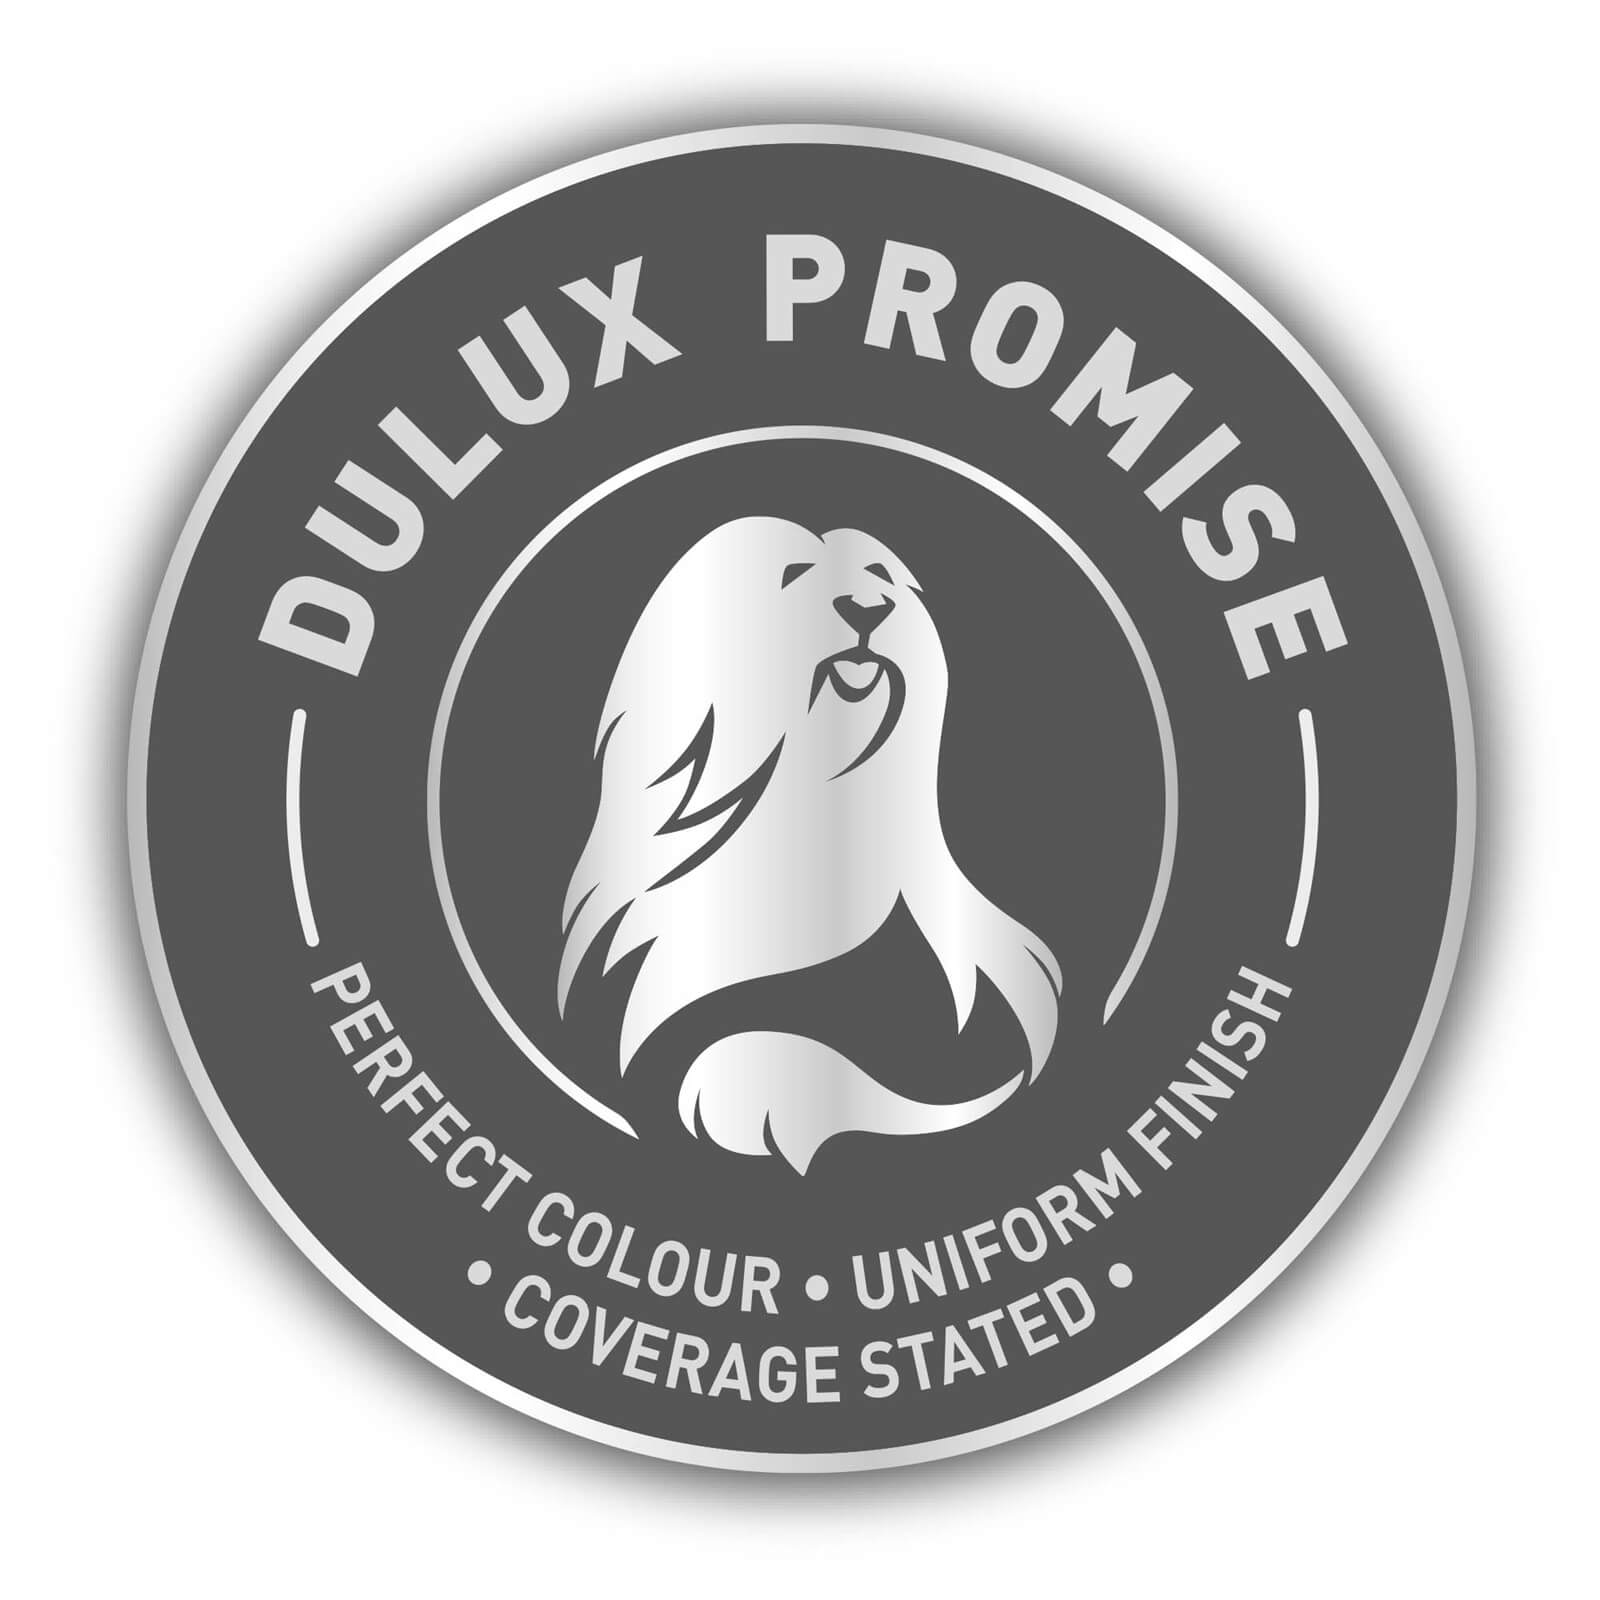 Dulux Matt Emulsion Paint Ivory - 2.5L